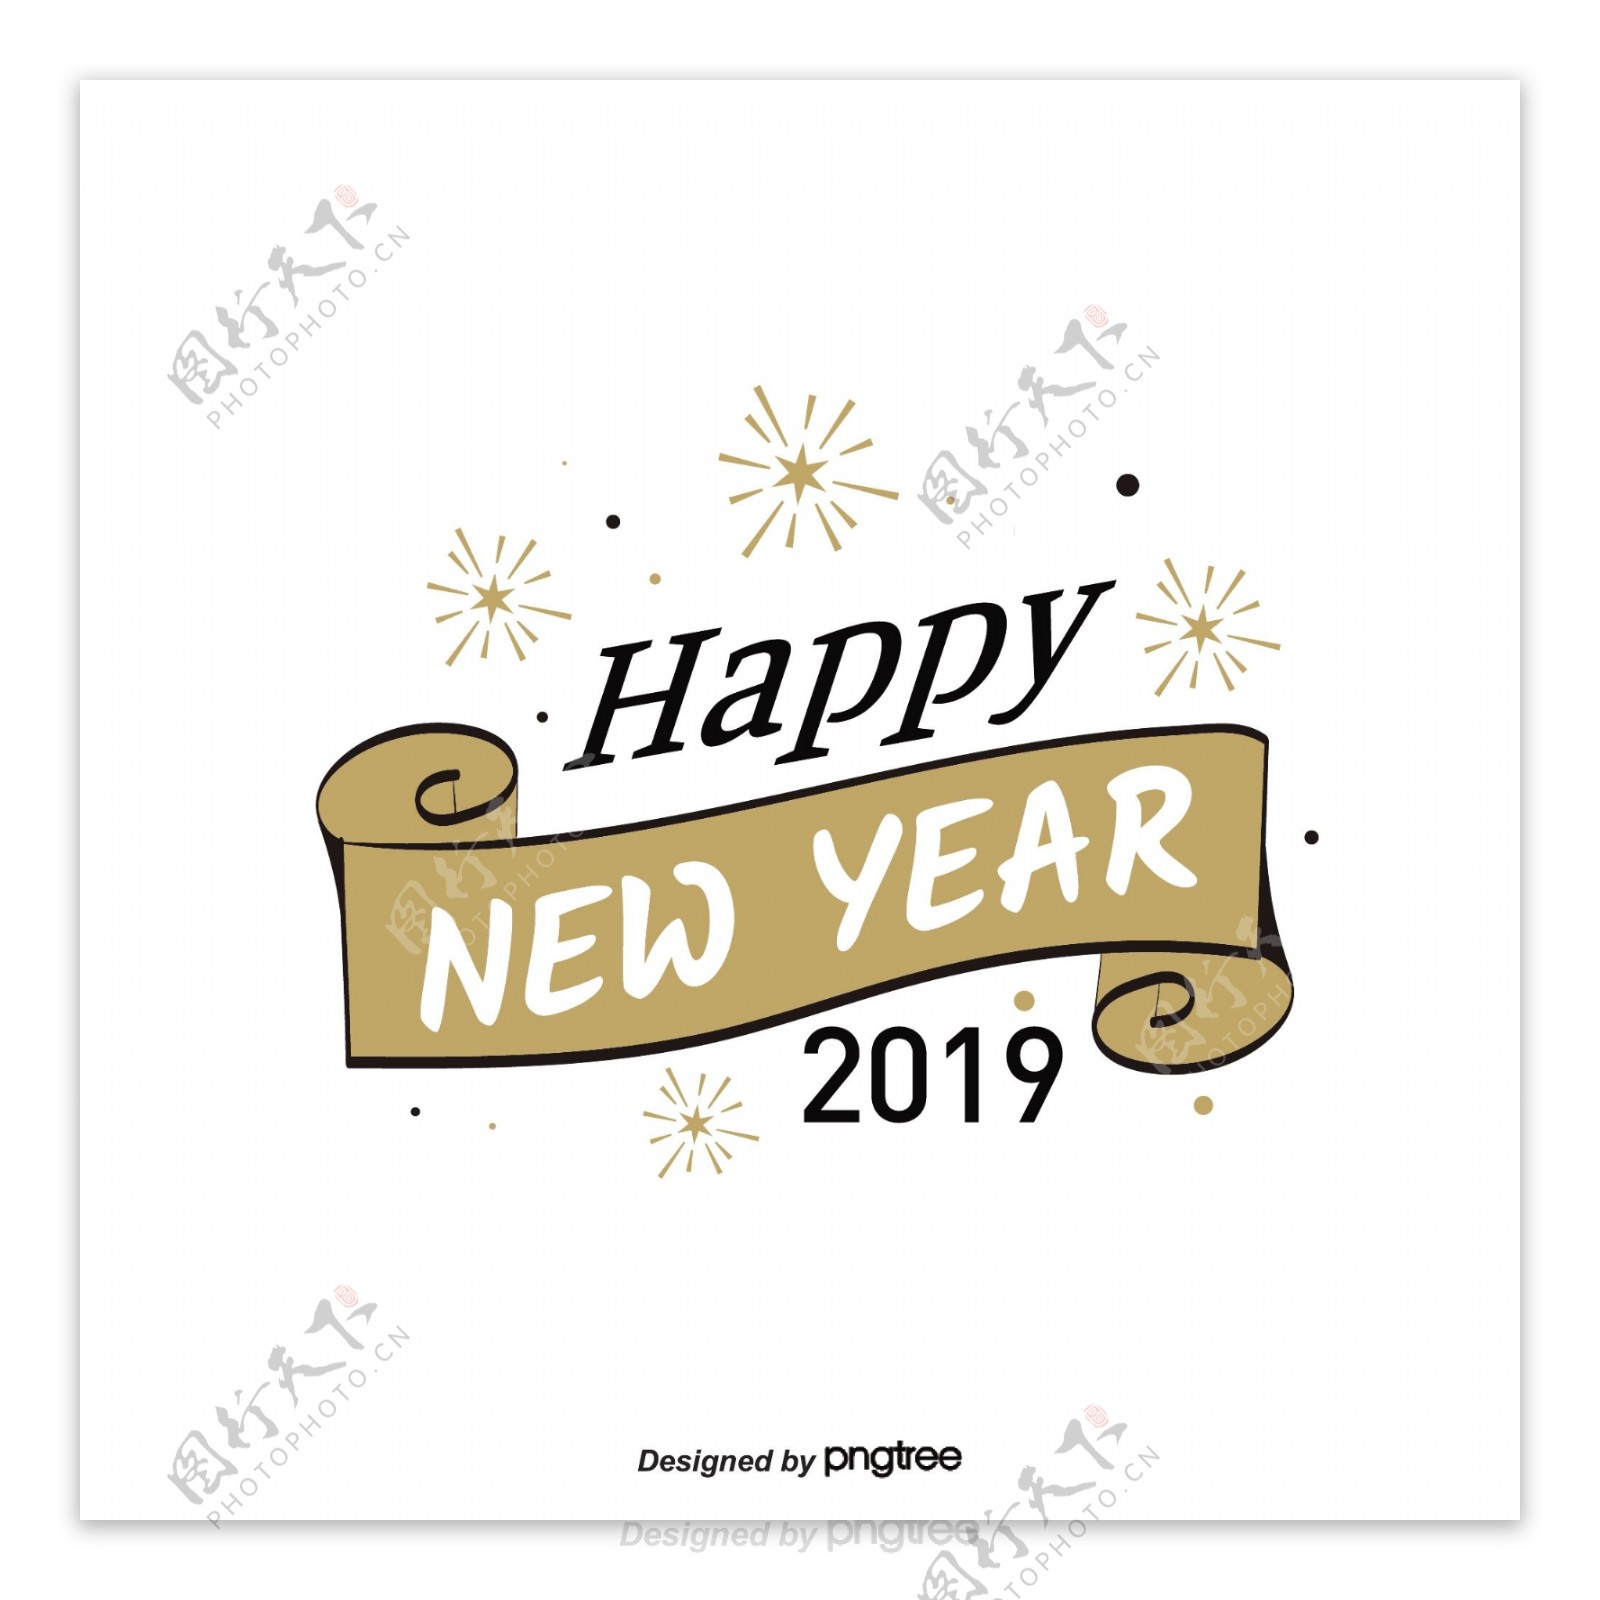 新年快乐2019标签烟花